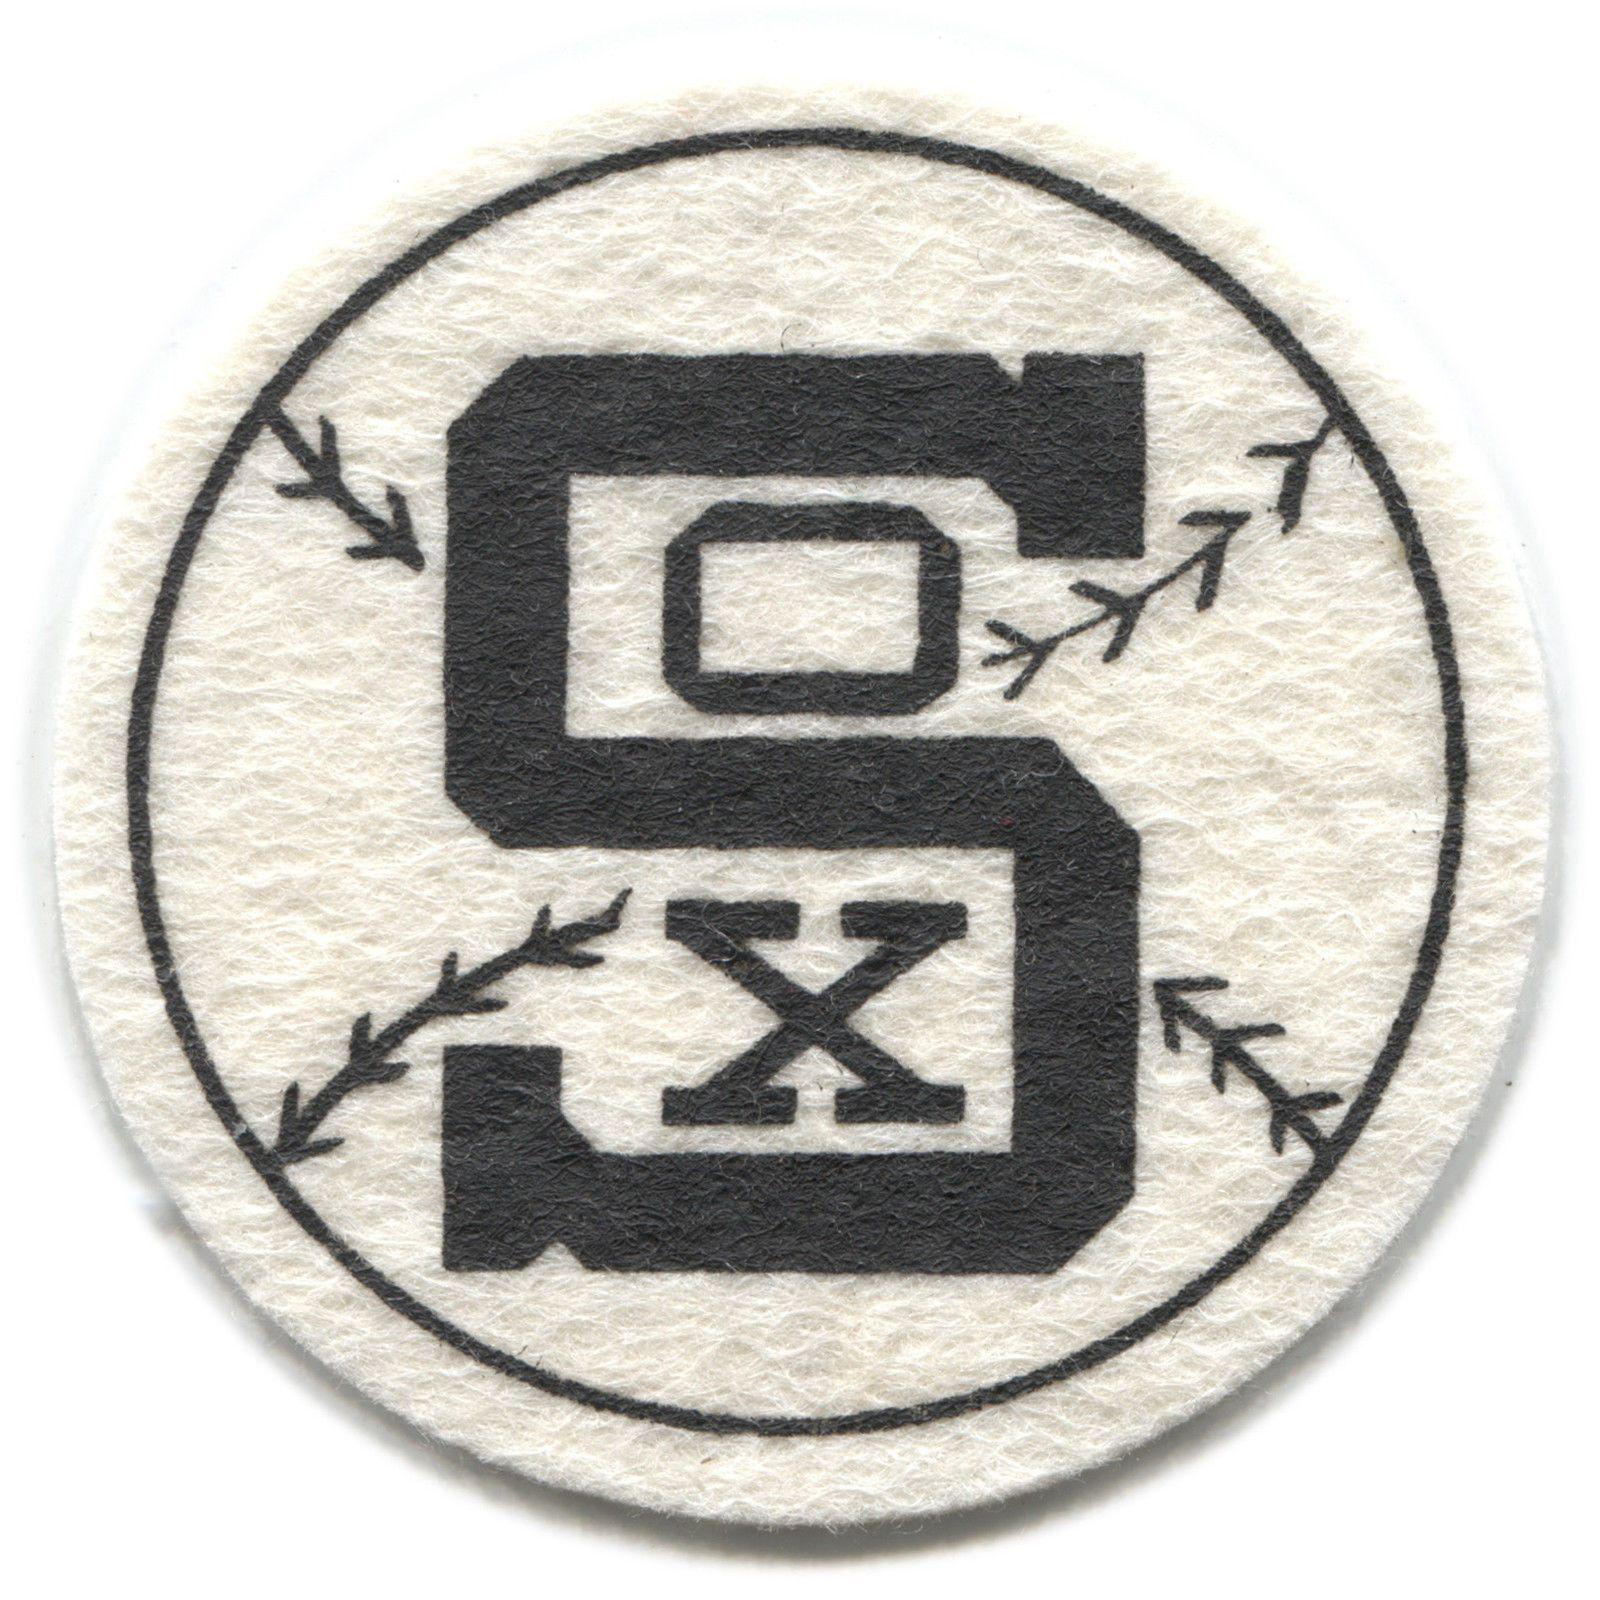 White Sox Old Logo - chicago white sox mlb baseball best and co. vintage 2.5 team